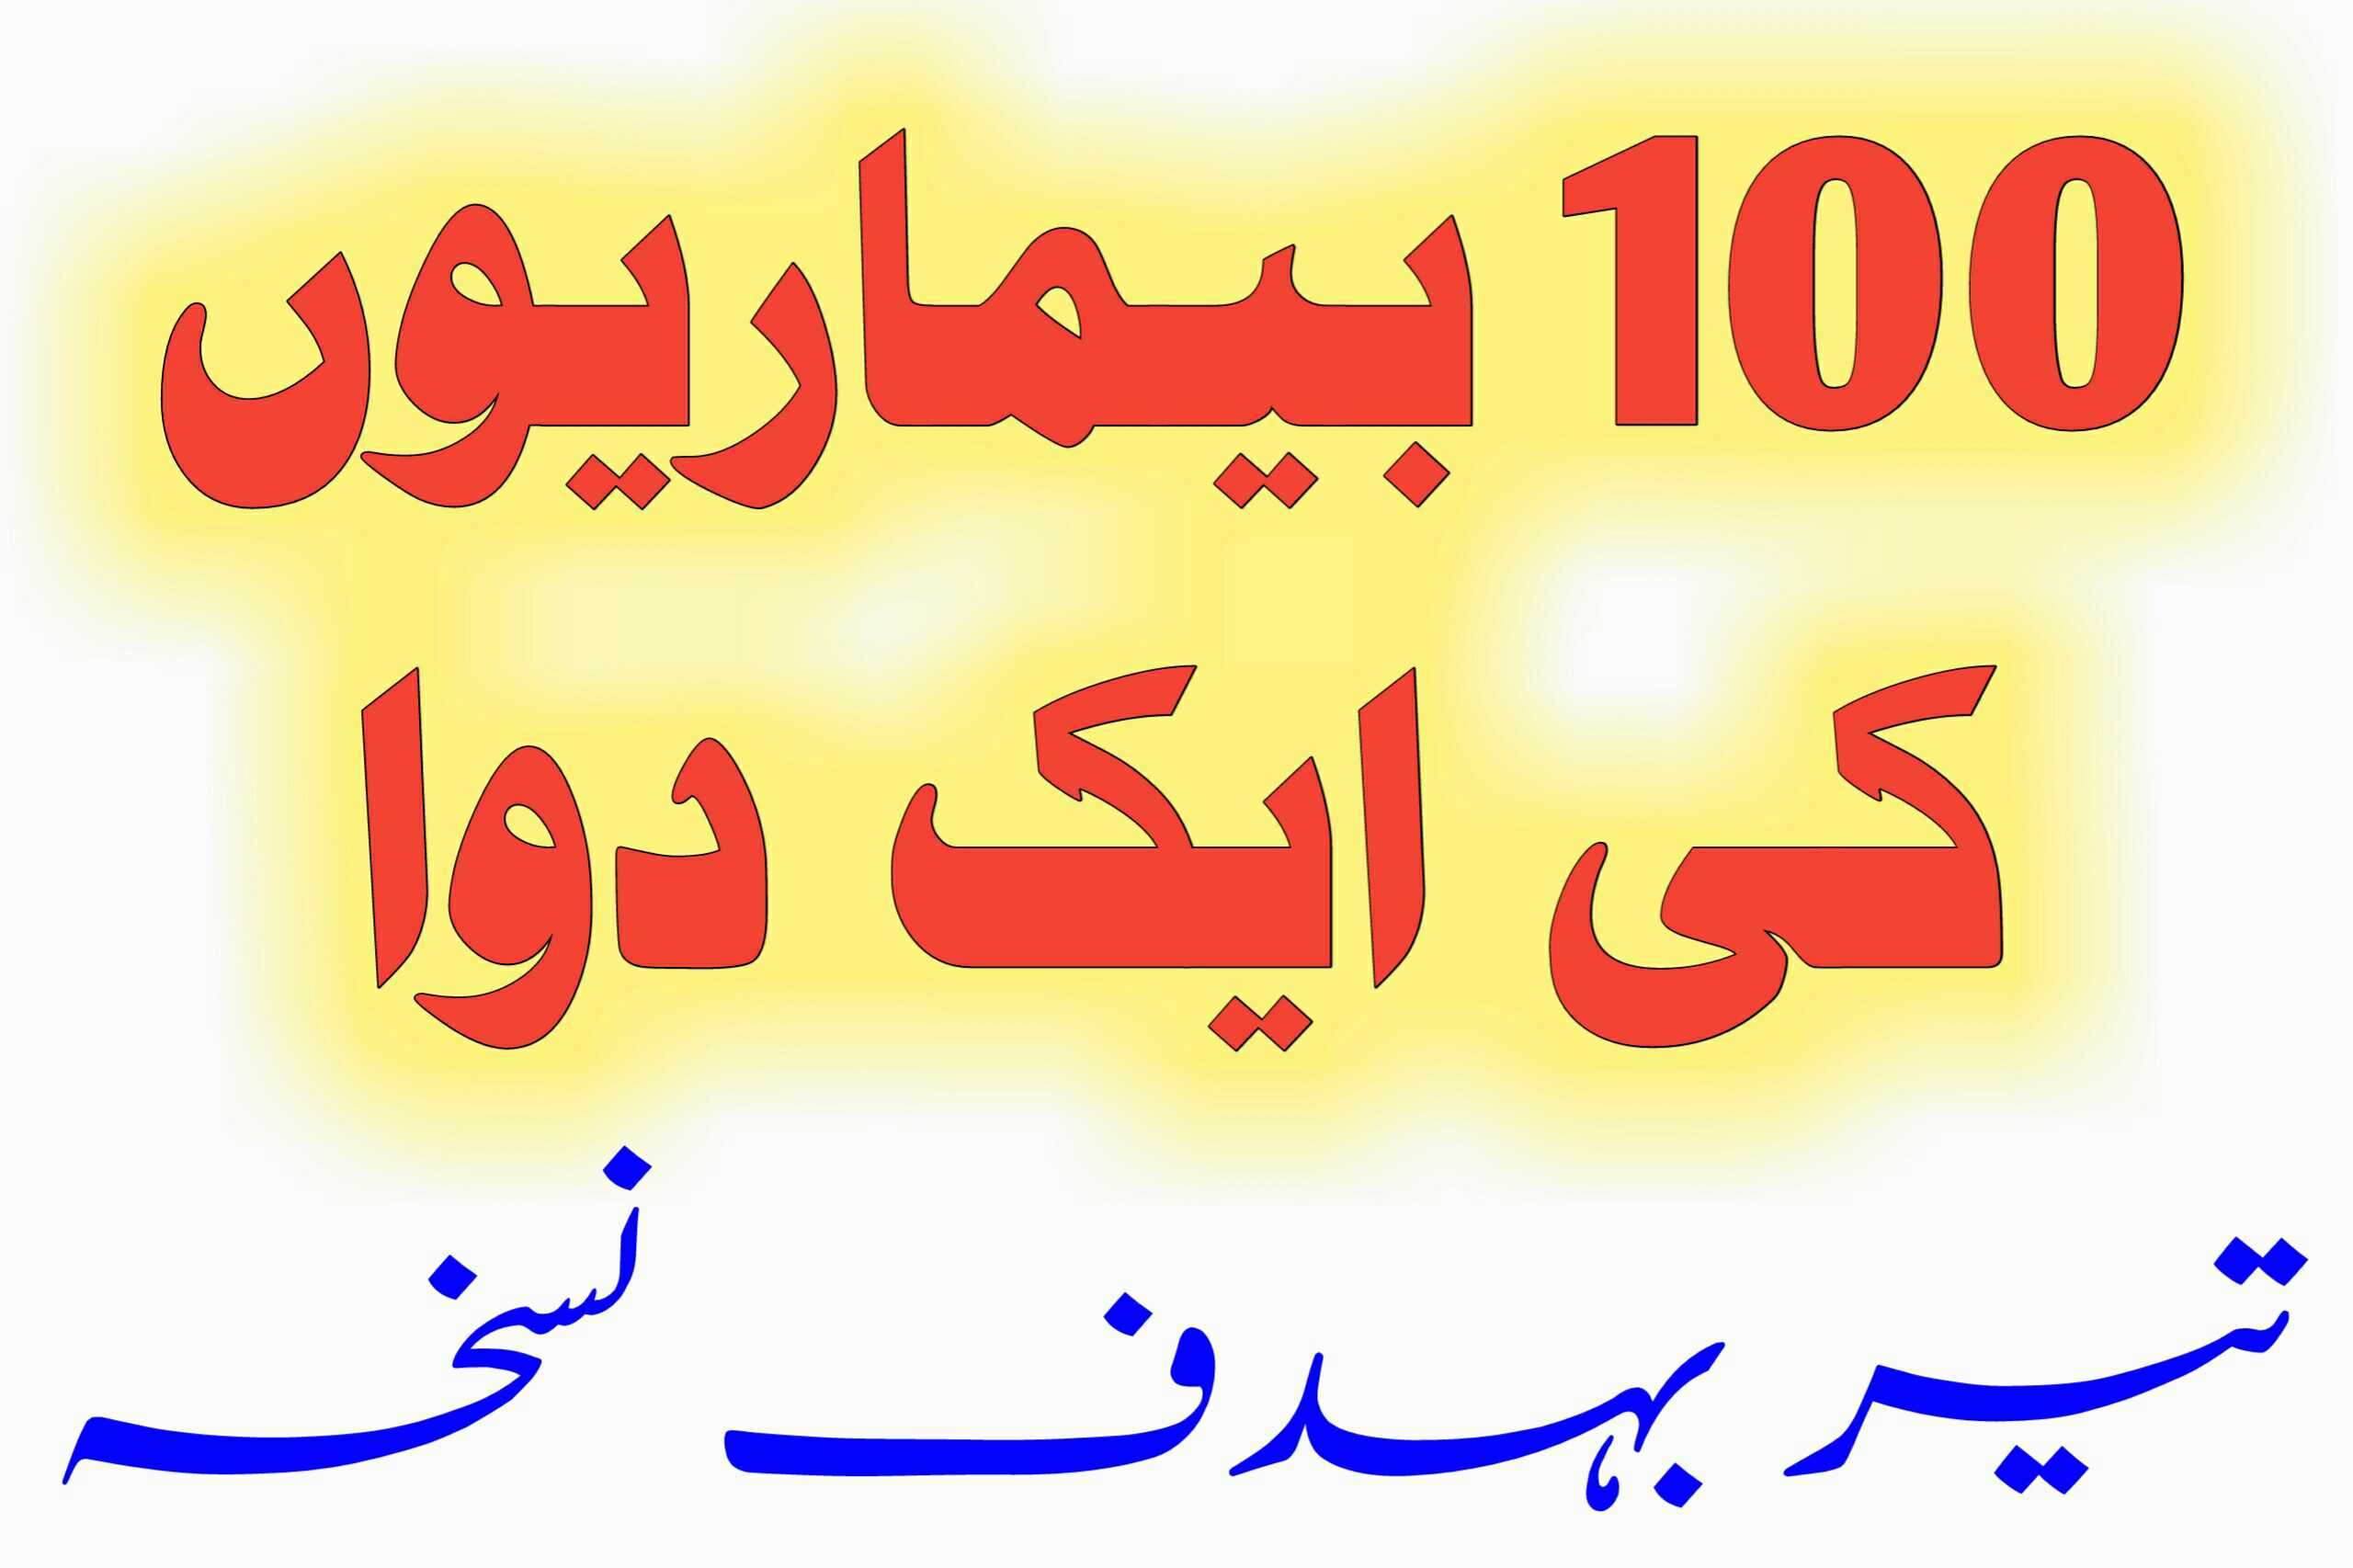 100 Amraaz Ki Ek Duwa in Urdu and Hindi